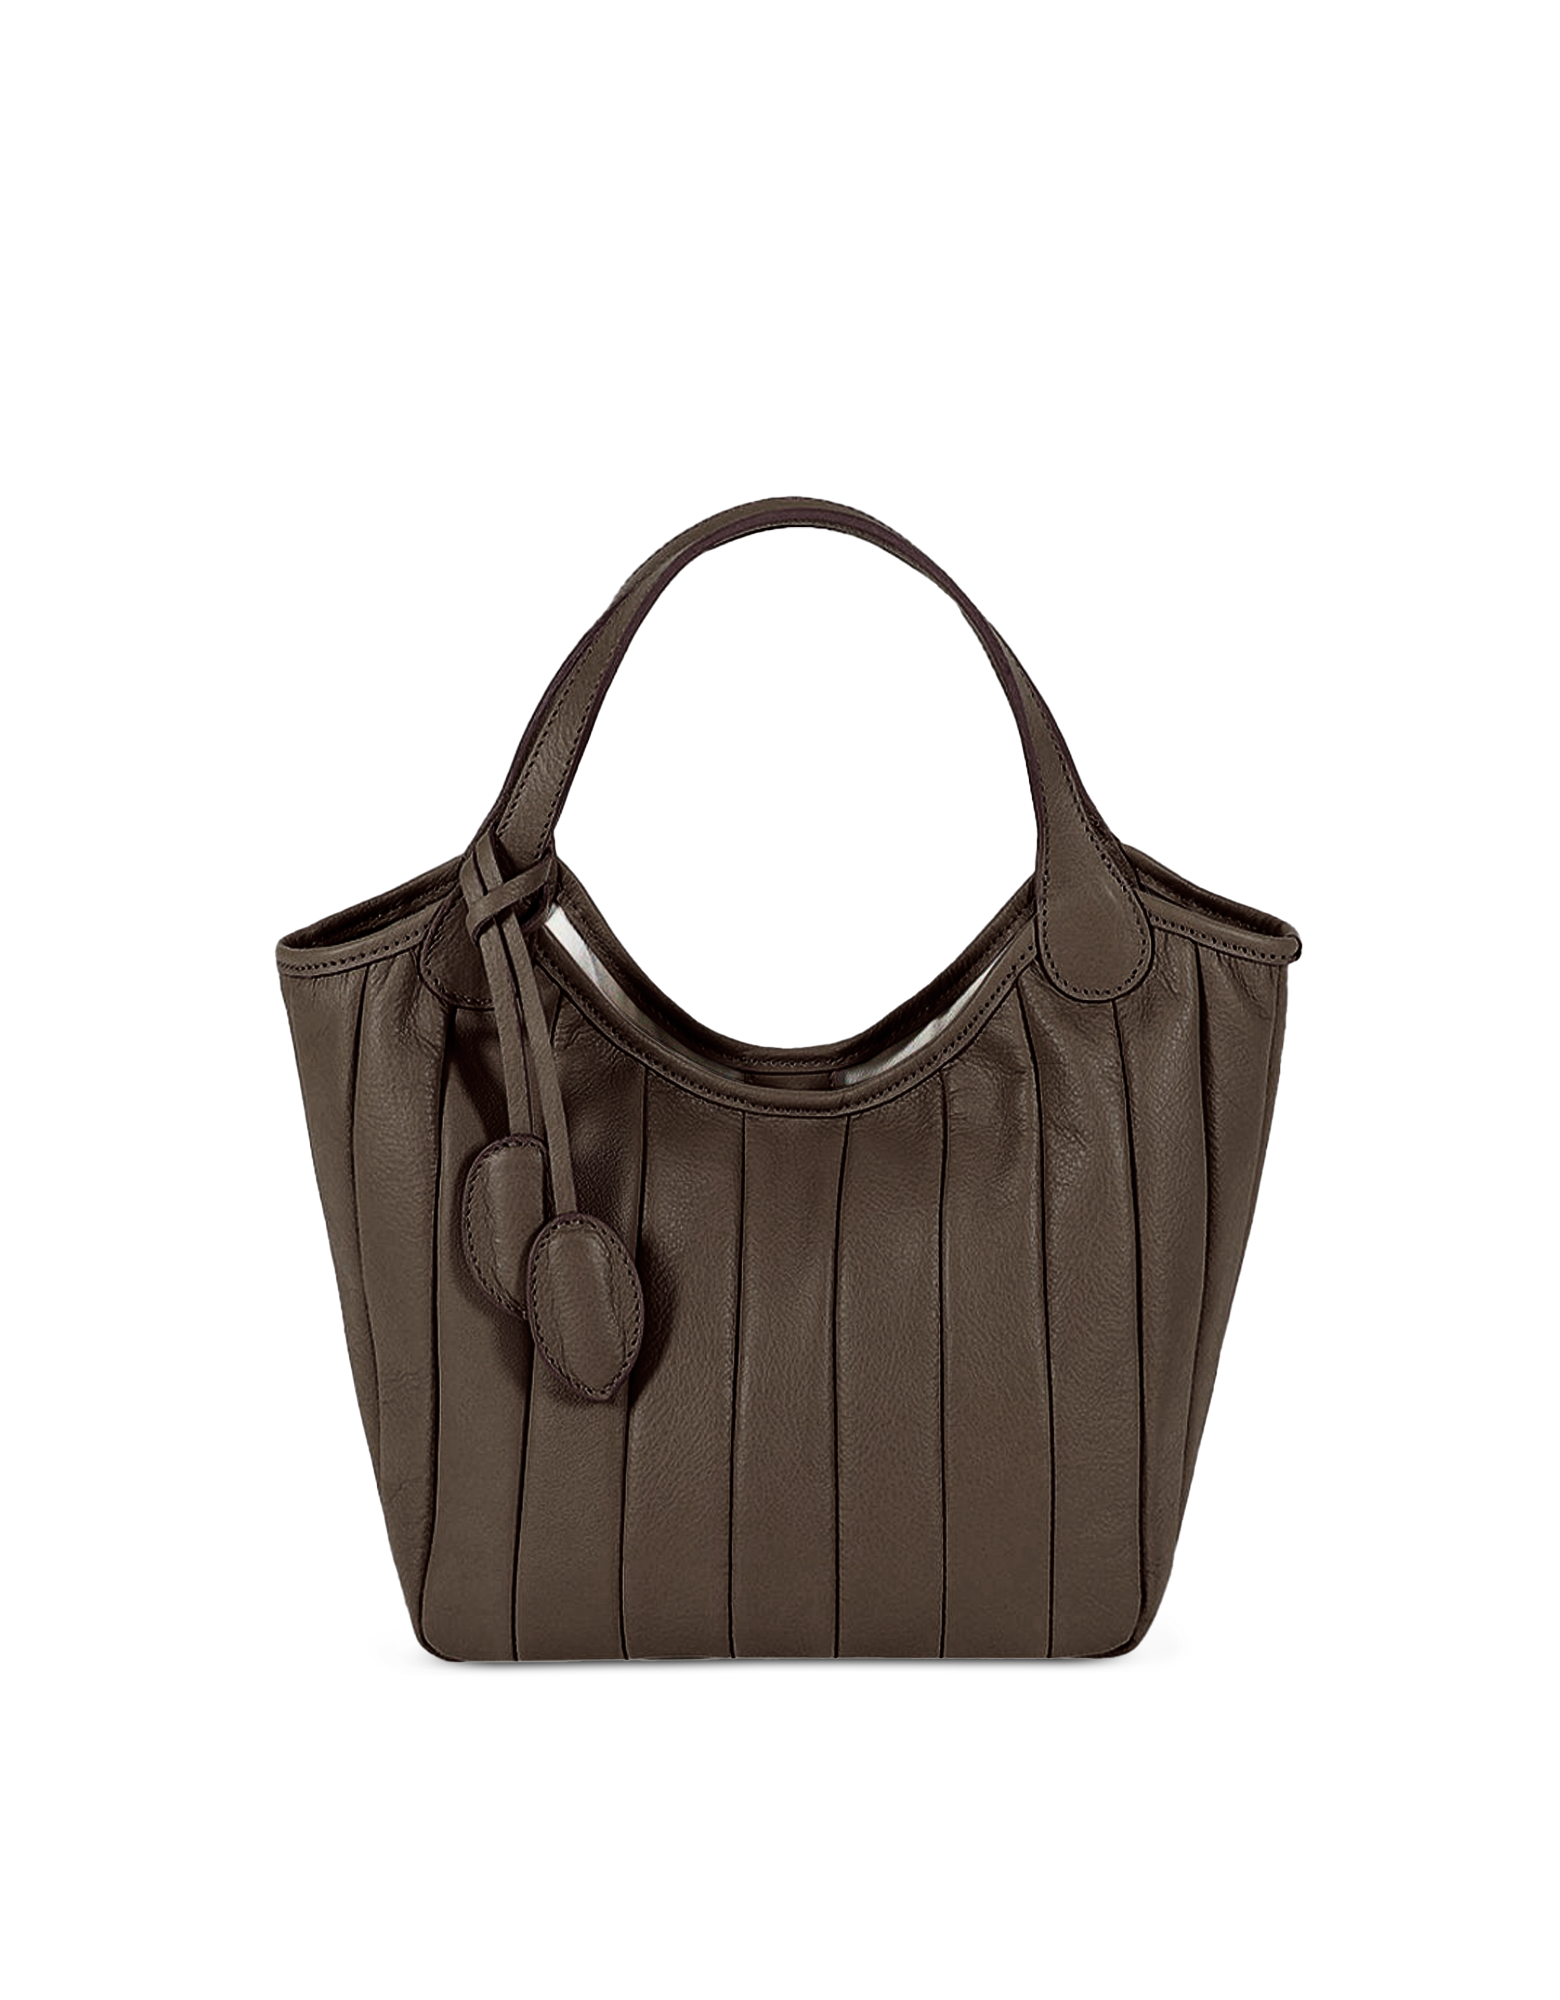 Alma Tonutti 5224 - Top Handle Bag